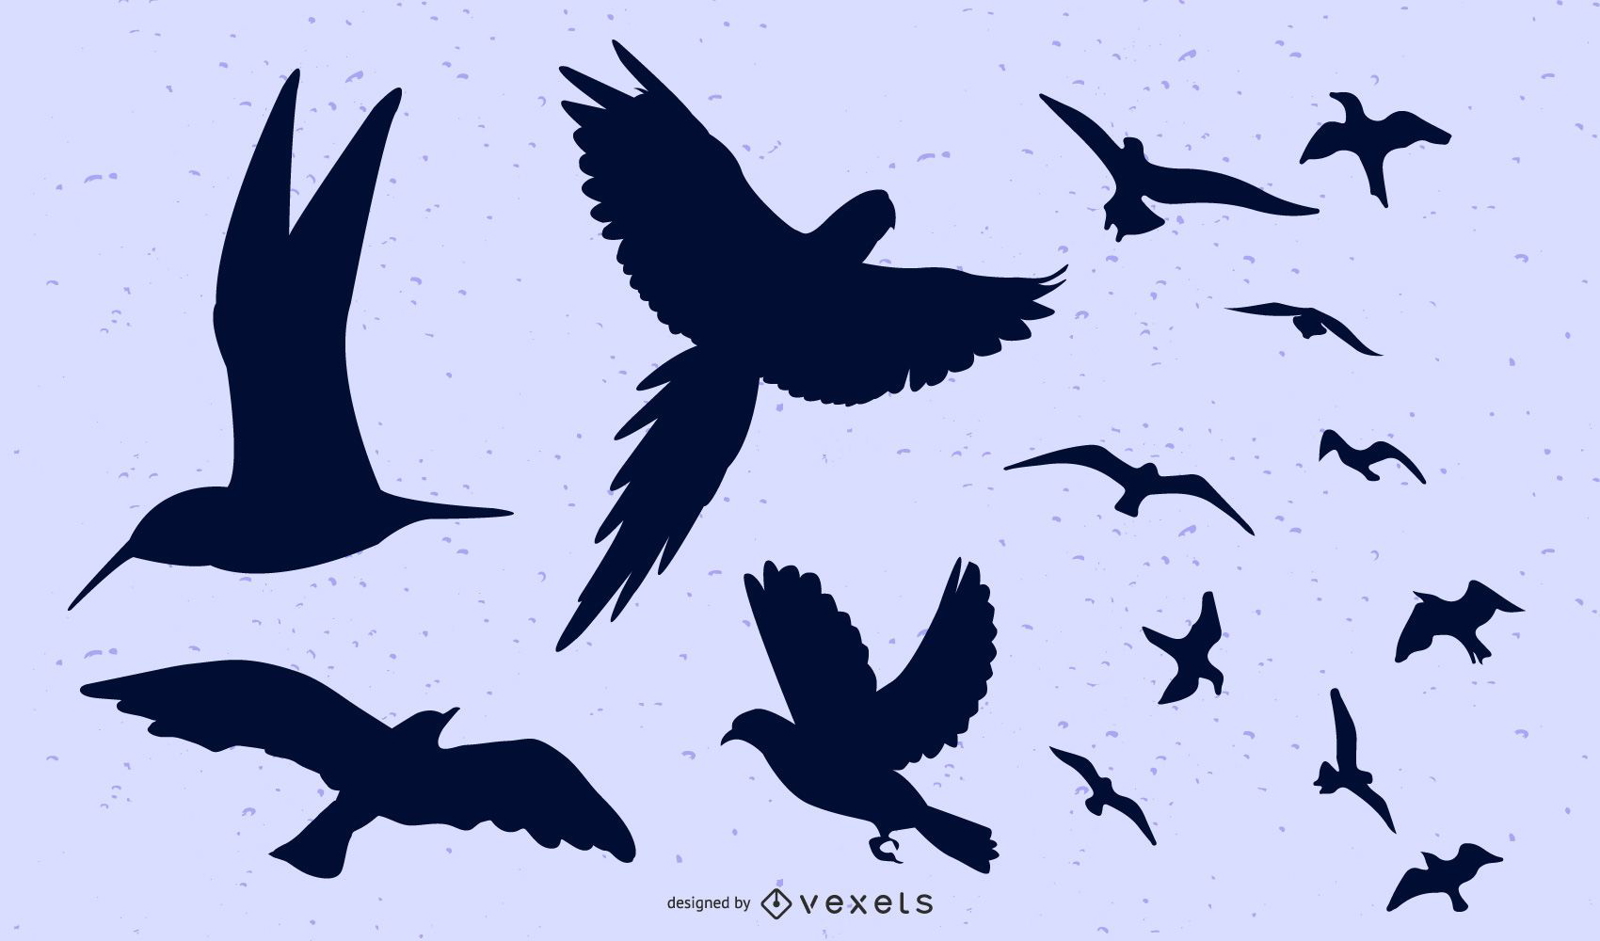 Aves voando em grupo e separadamente